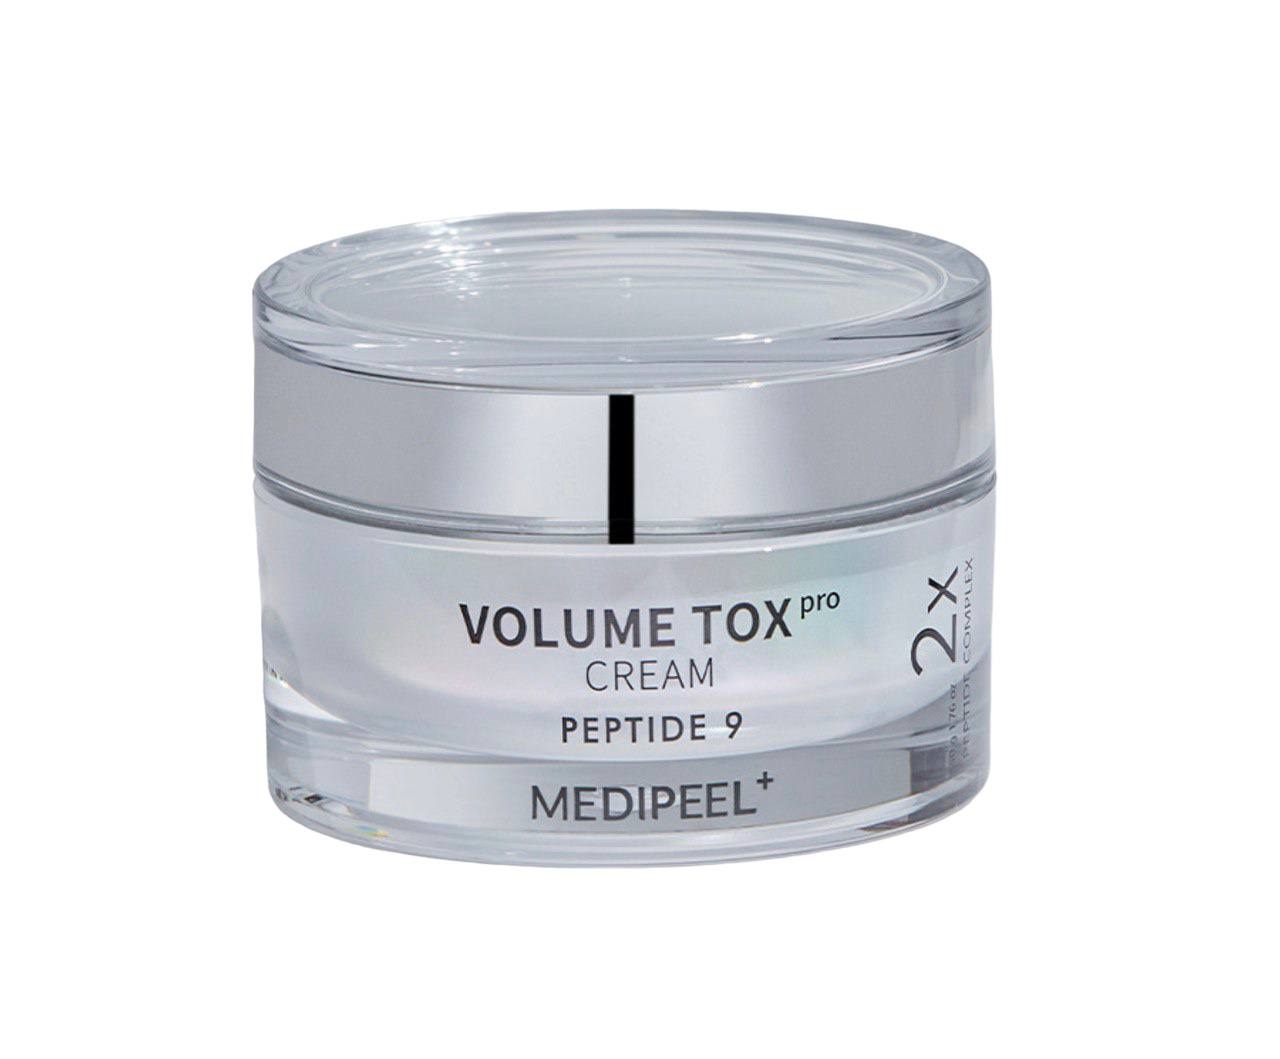 Омолаживающий крем для упругости кожи Medi-Peel Peptide 9 Volume Tox Cream Pro 50 мл восстанавливающая сыворотка pro medi peel peptide 9 volume bio tox ampoule pro 100мл